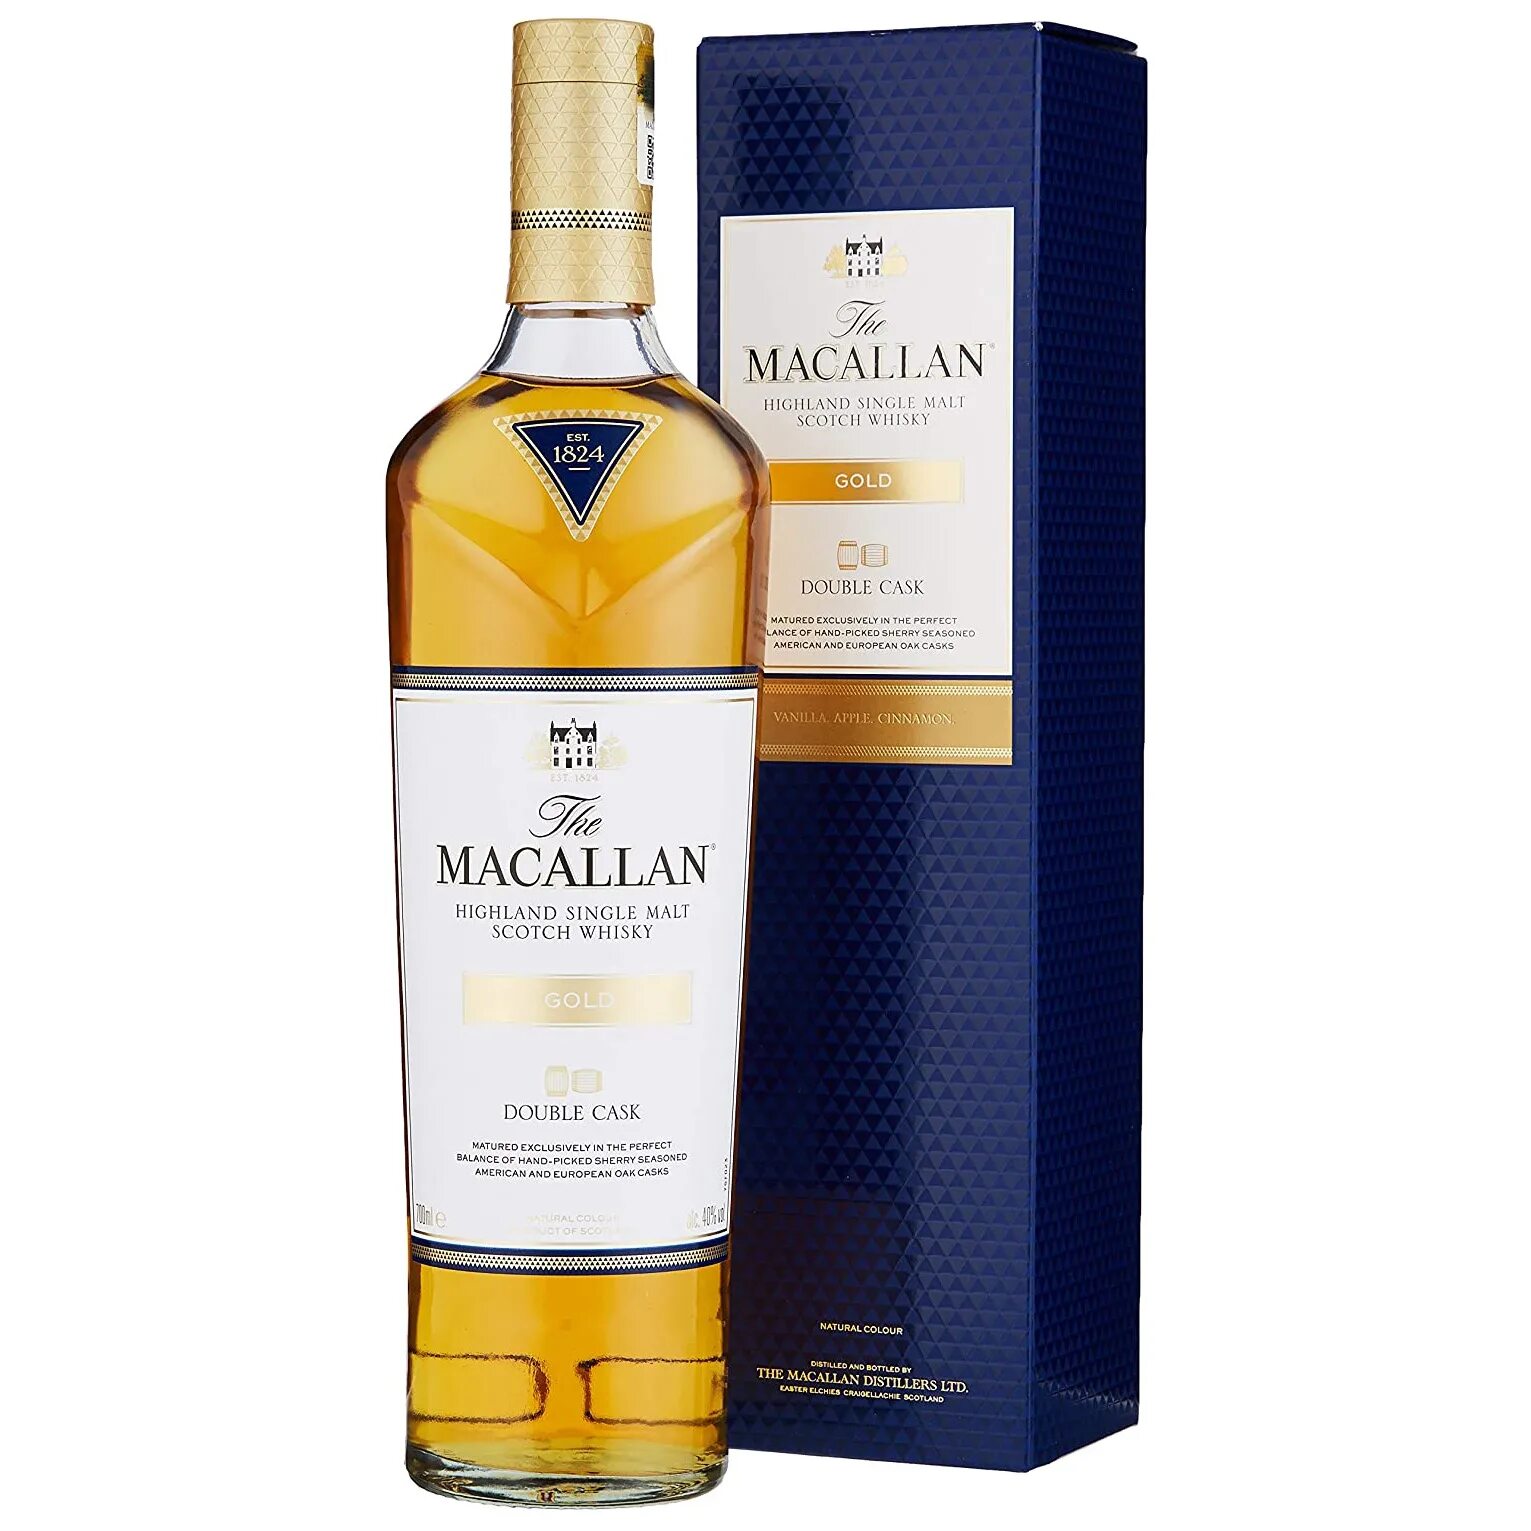 Виски Macallan Gold Double. Макаллан Голд Дабл Каск 0.7. Виски the Macallan Double Cask. Виски Макаллан Дабл Каск Голд.